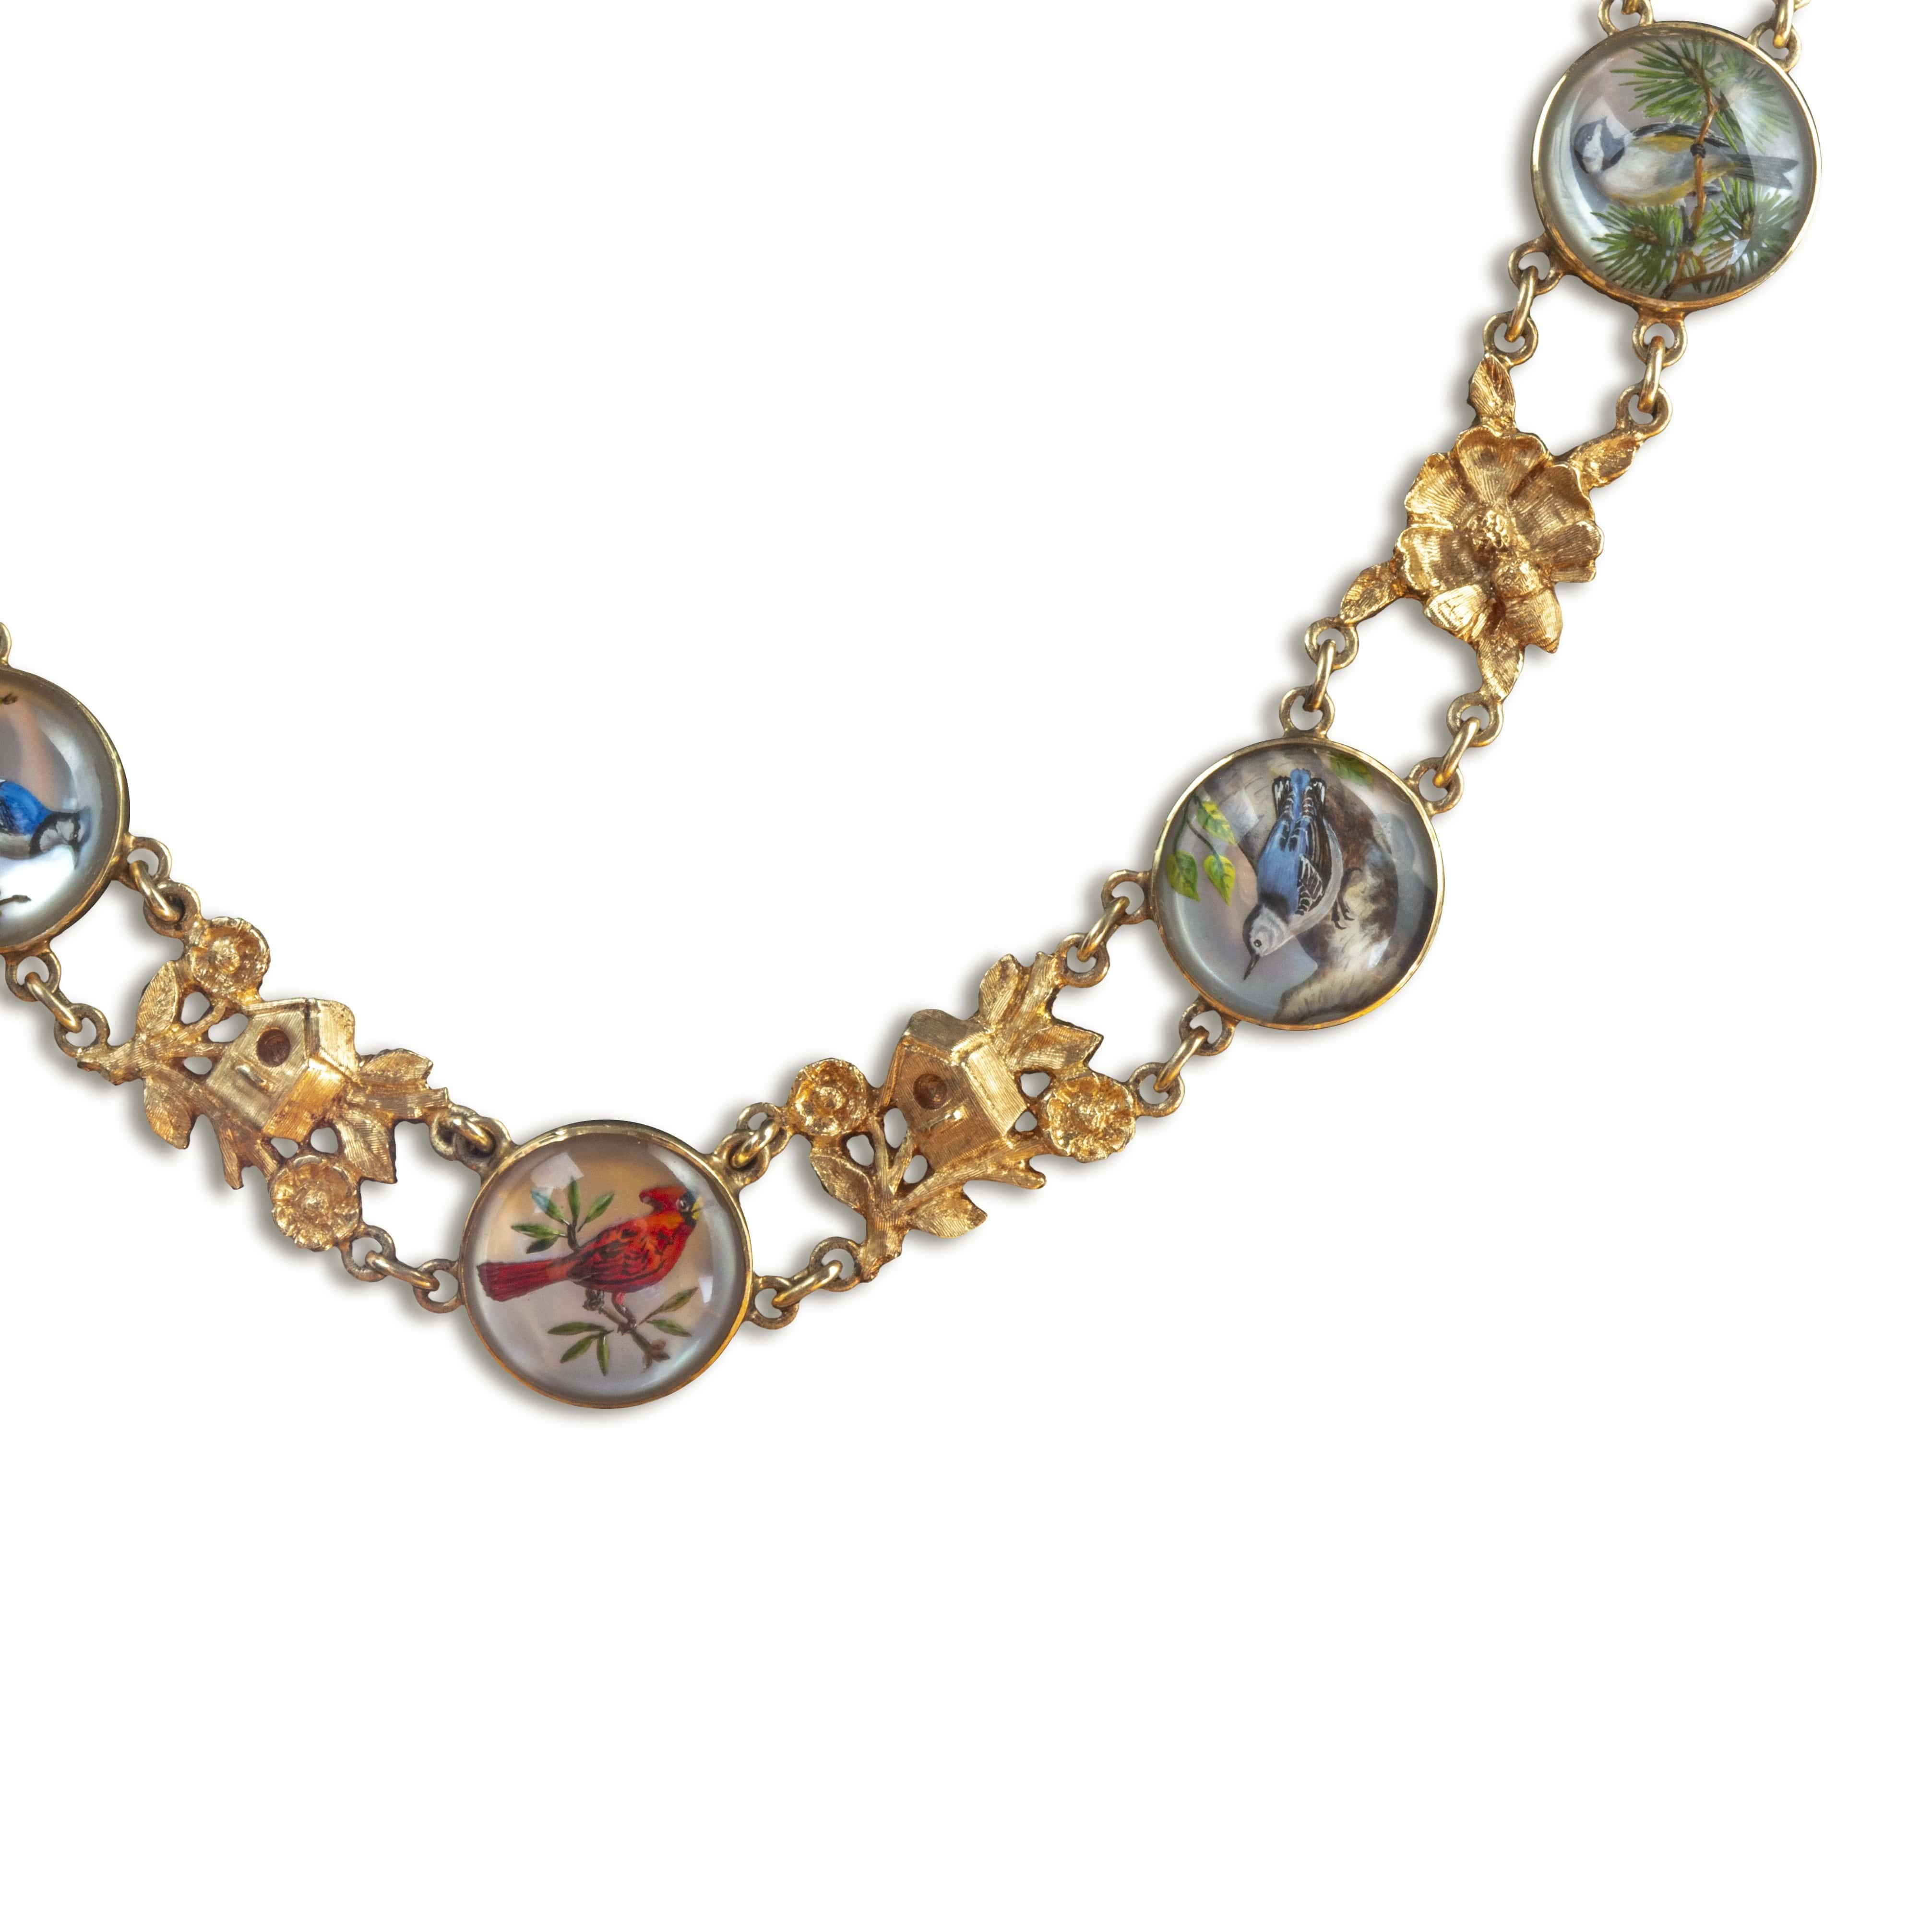 Victorian Reverse Essex Crystal intaglio Bird floral motif necklace.

